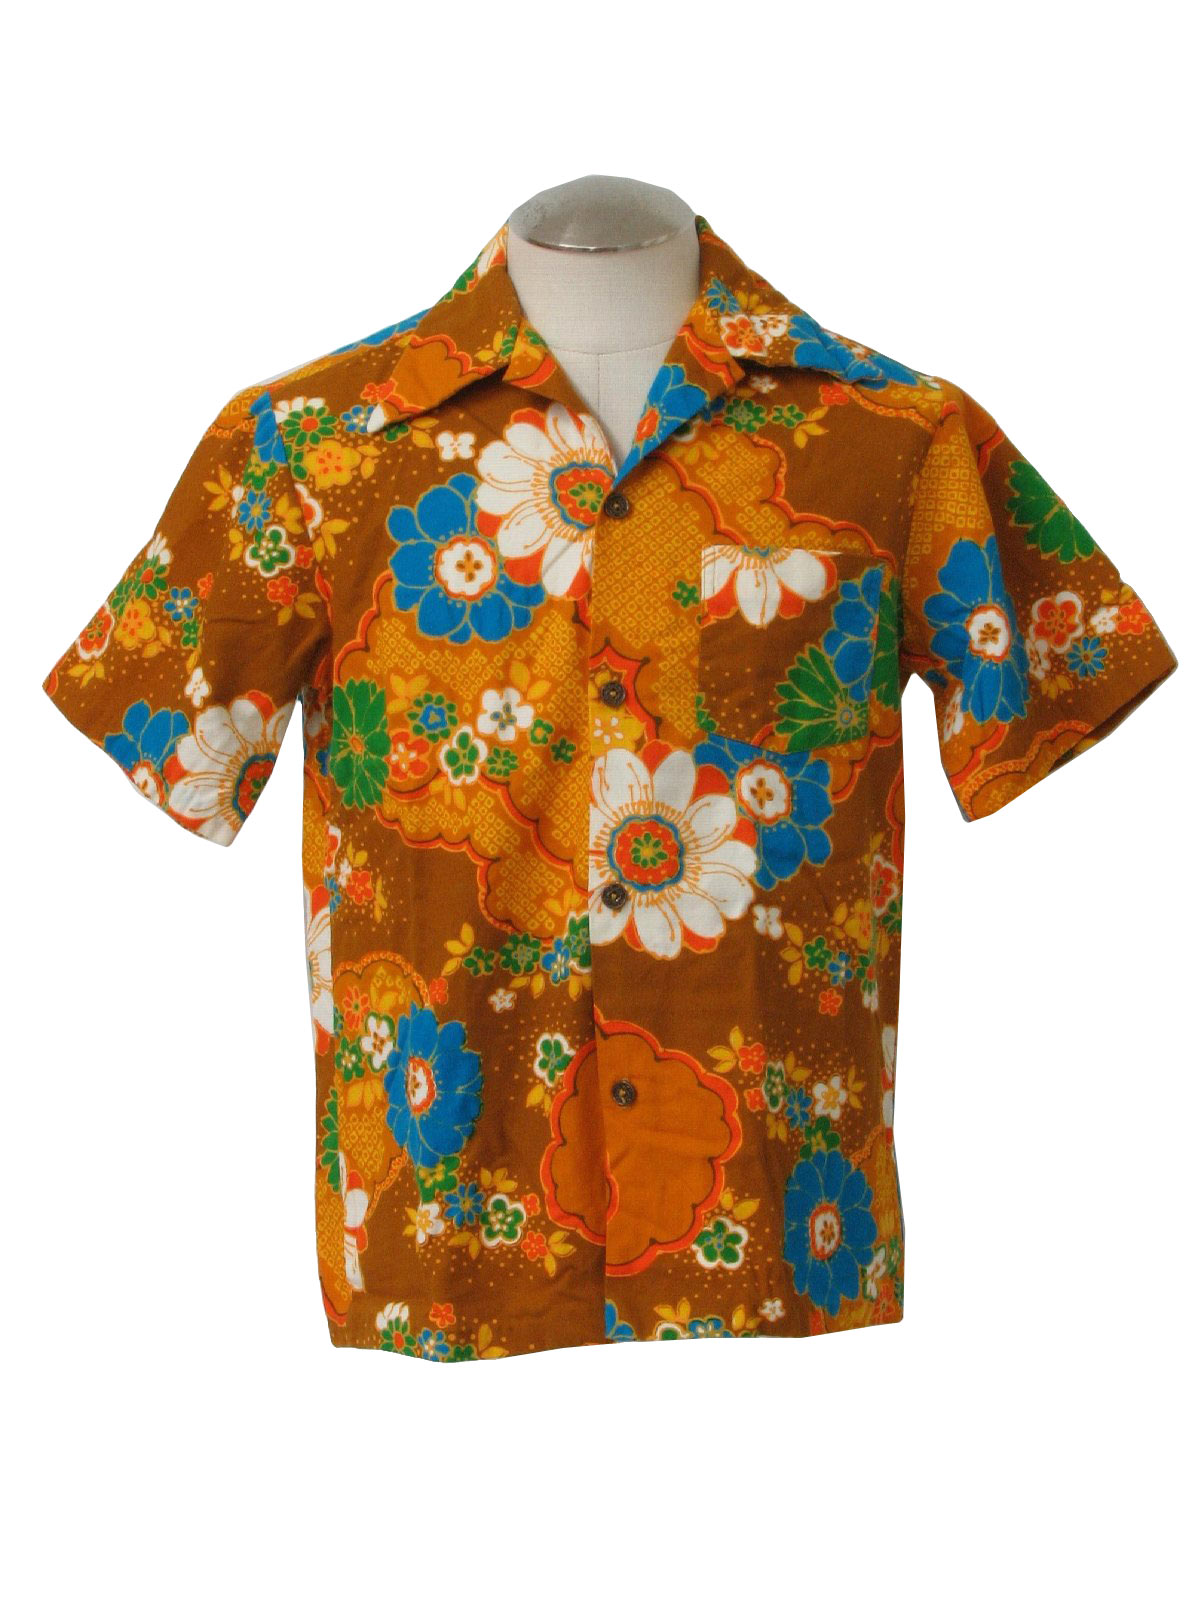 Vintage Made in Hawaii Seventies Hawaiian Shirt: Early 70s -Made in ...